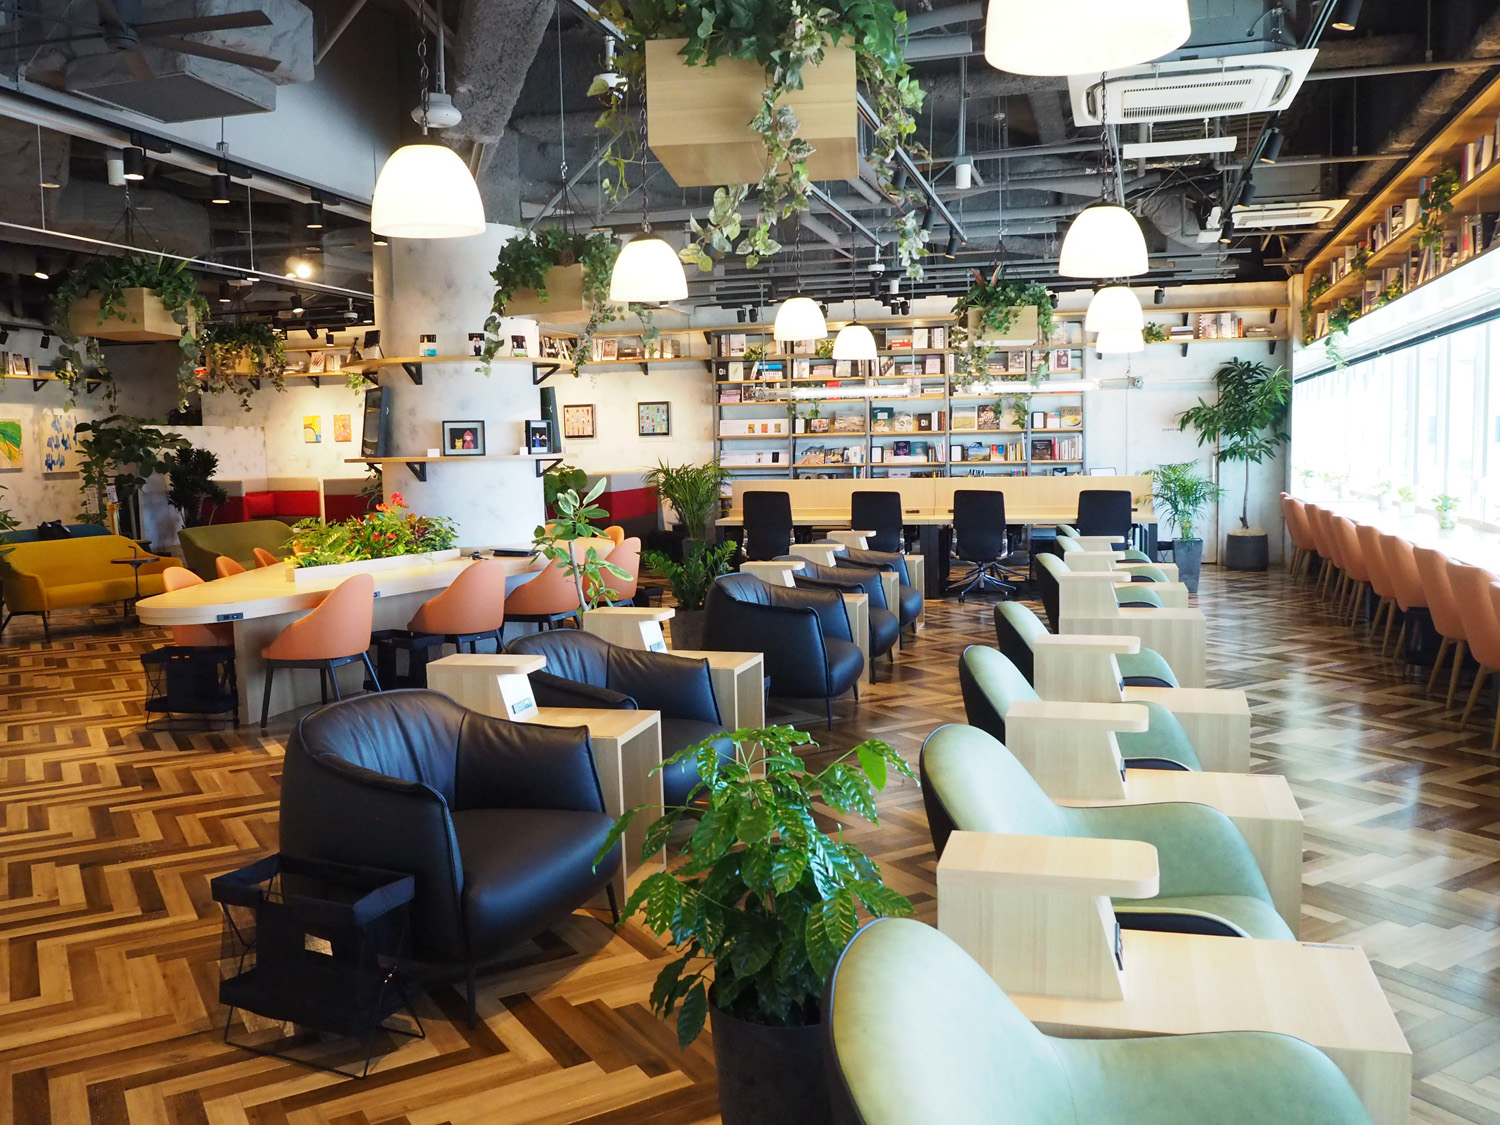 Tsutaya Bookstore 福岡空港 Cafe Lounge コワーキングスペース Book Co と提携開始 カルチュア コンビニエンス クラブ株式会社 九州カンパニー